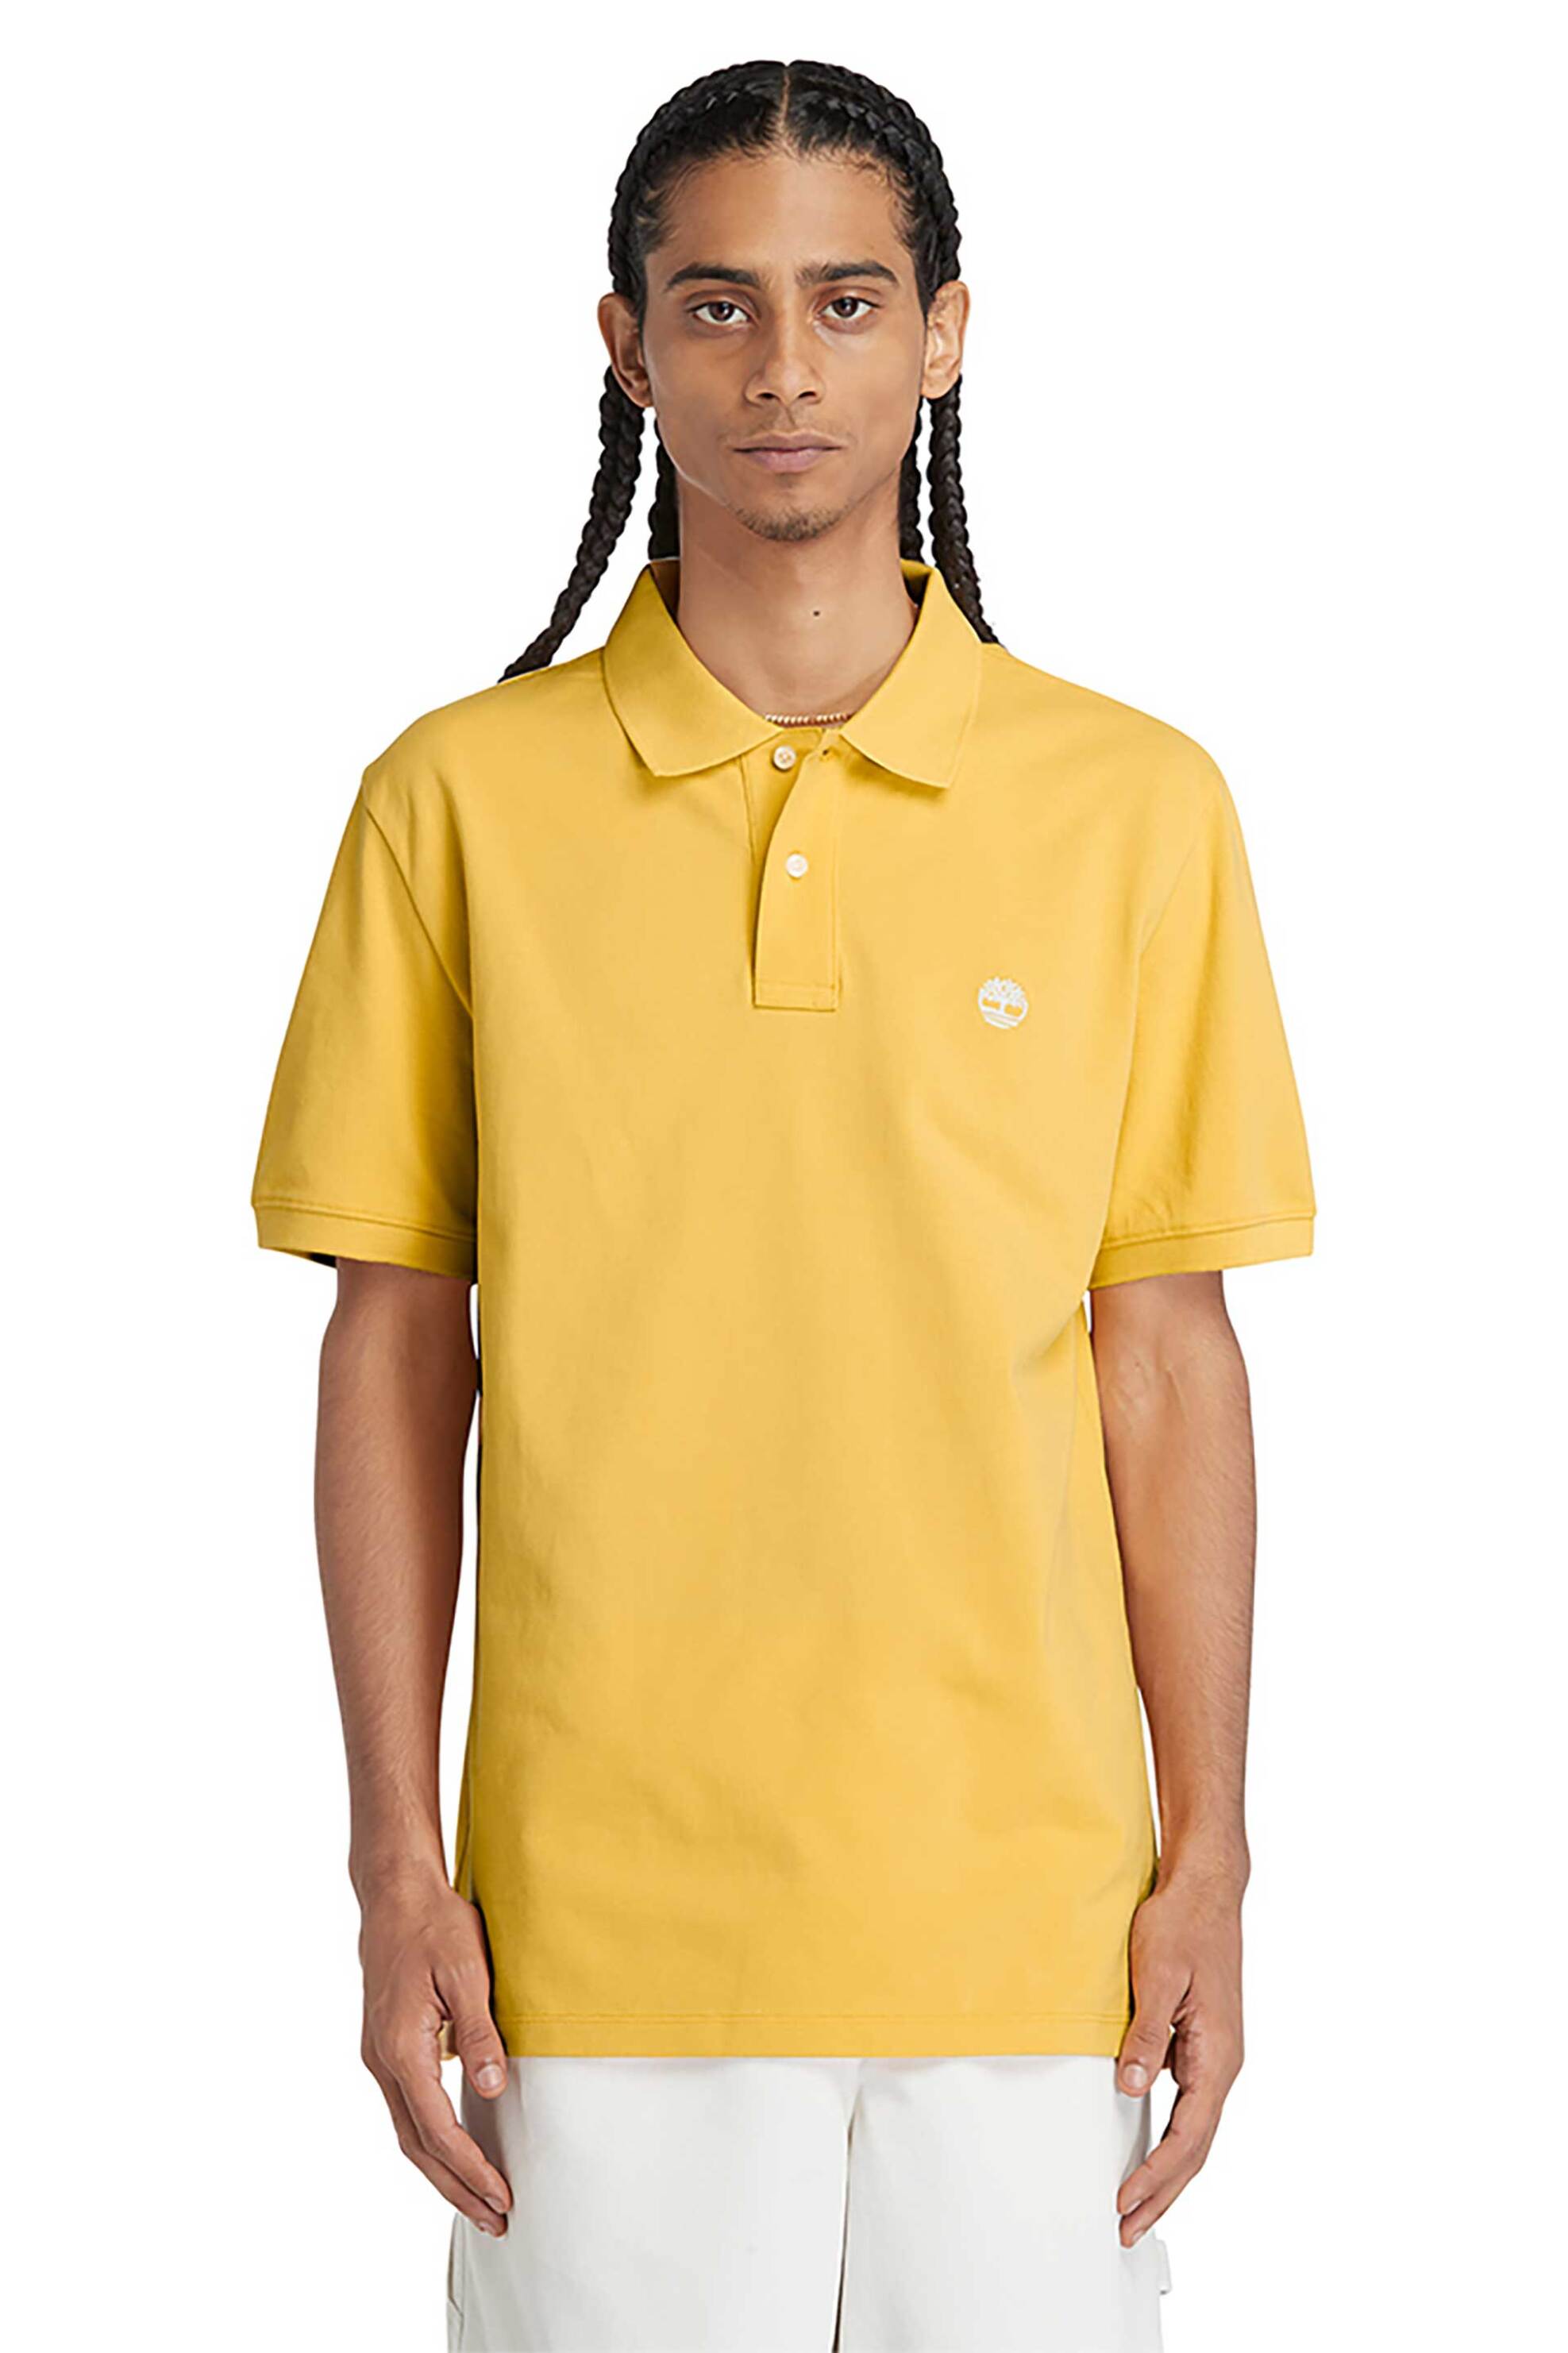 Ανδρική Μόδα > Ανδρικά Ρούχα > Ανδρικές Μπλούζες > Ανδρικές Μπλούζες Πολο Timberland ανδρική πόλο μπλούζα πικέ με κεντημένο λογότυπο Regular Fit "Ss Millers River" - TB0A26N4EG41 Κίτρινο